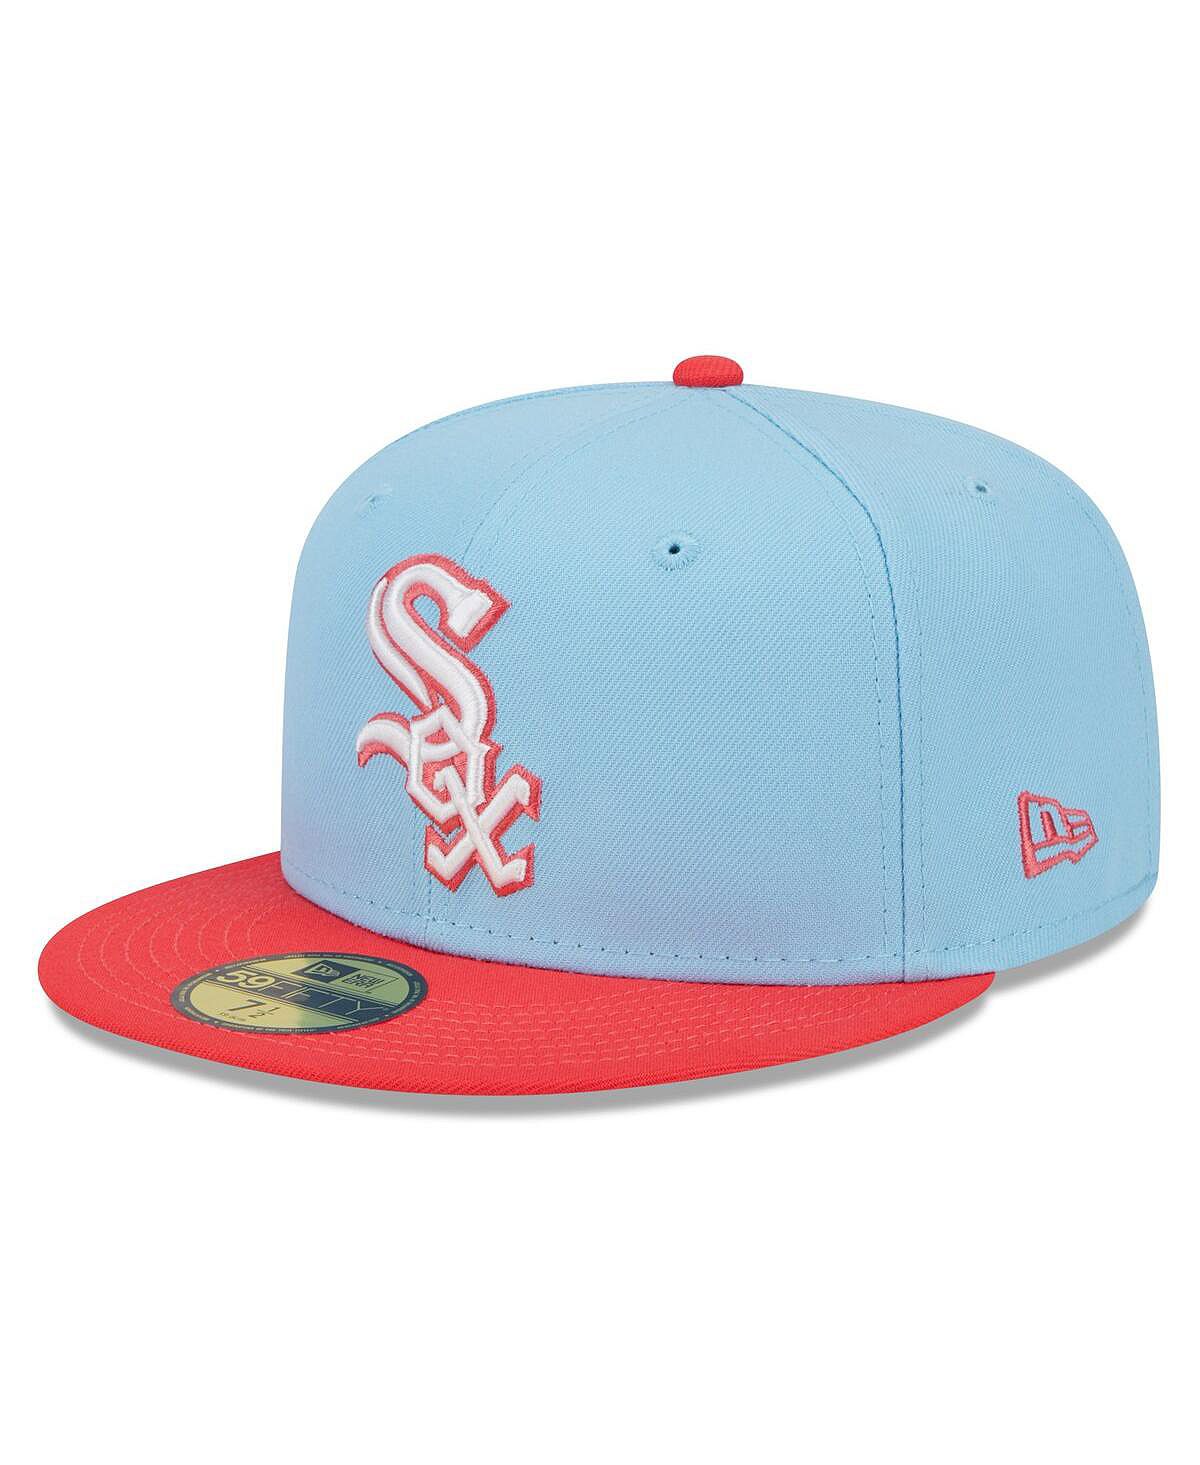 Мужская светло-синяя, красная двухцветная шляпа Chicago White Sox Spring Color 59FIFTY. New Era